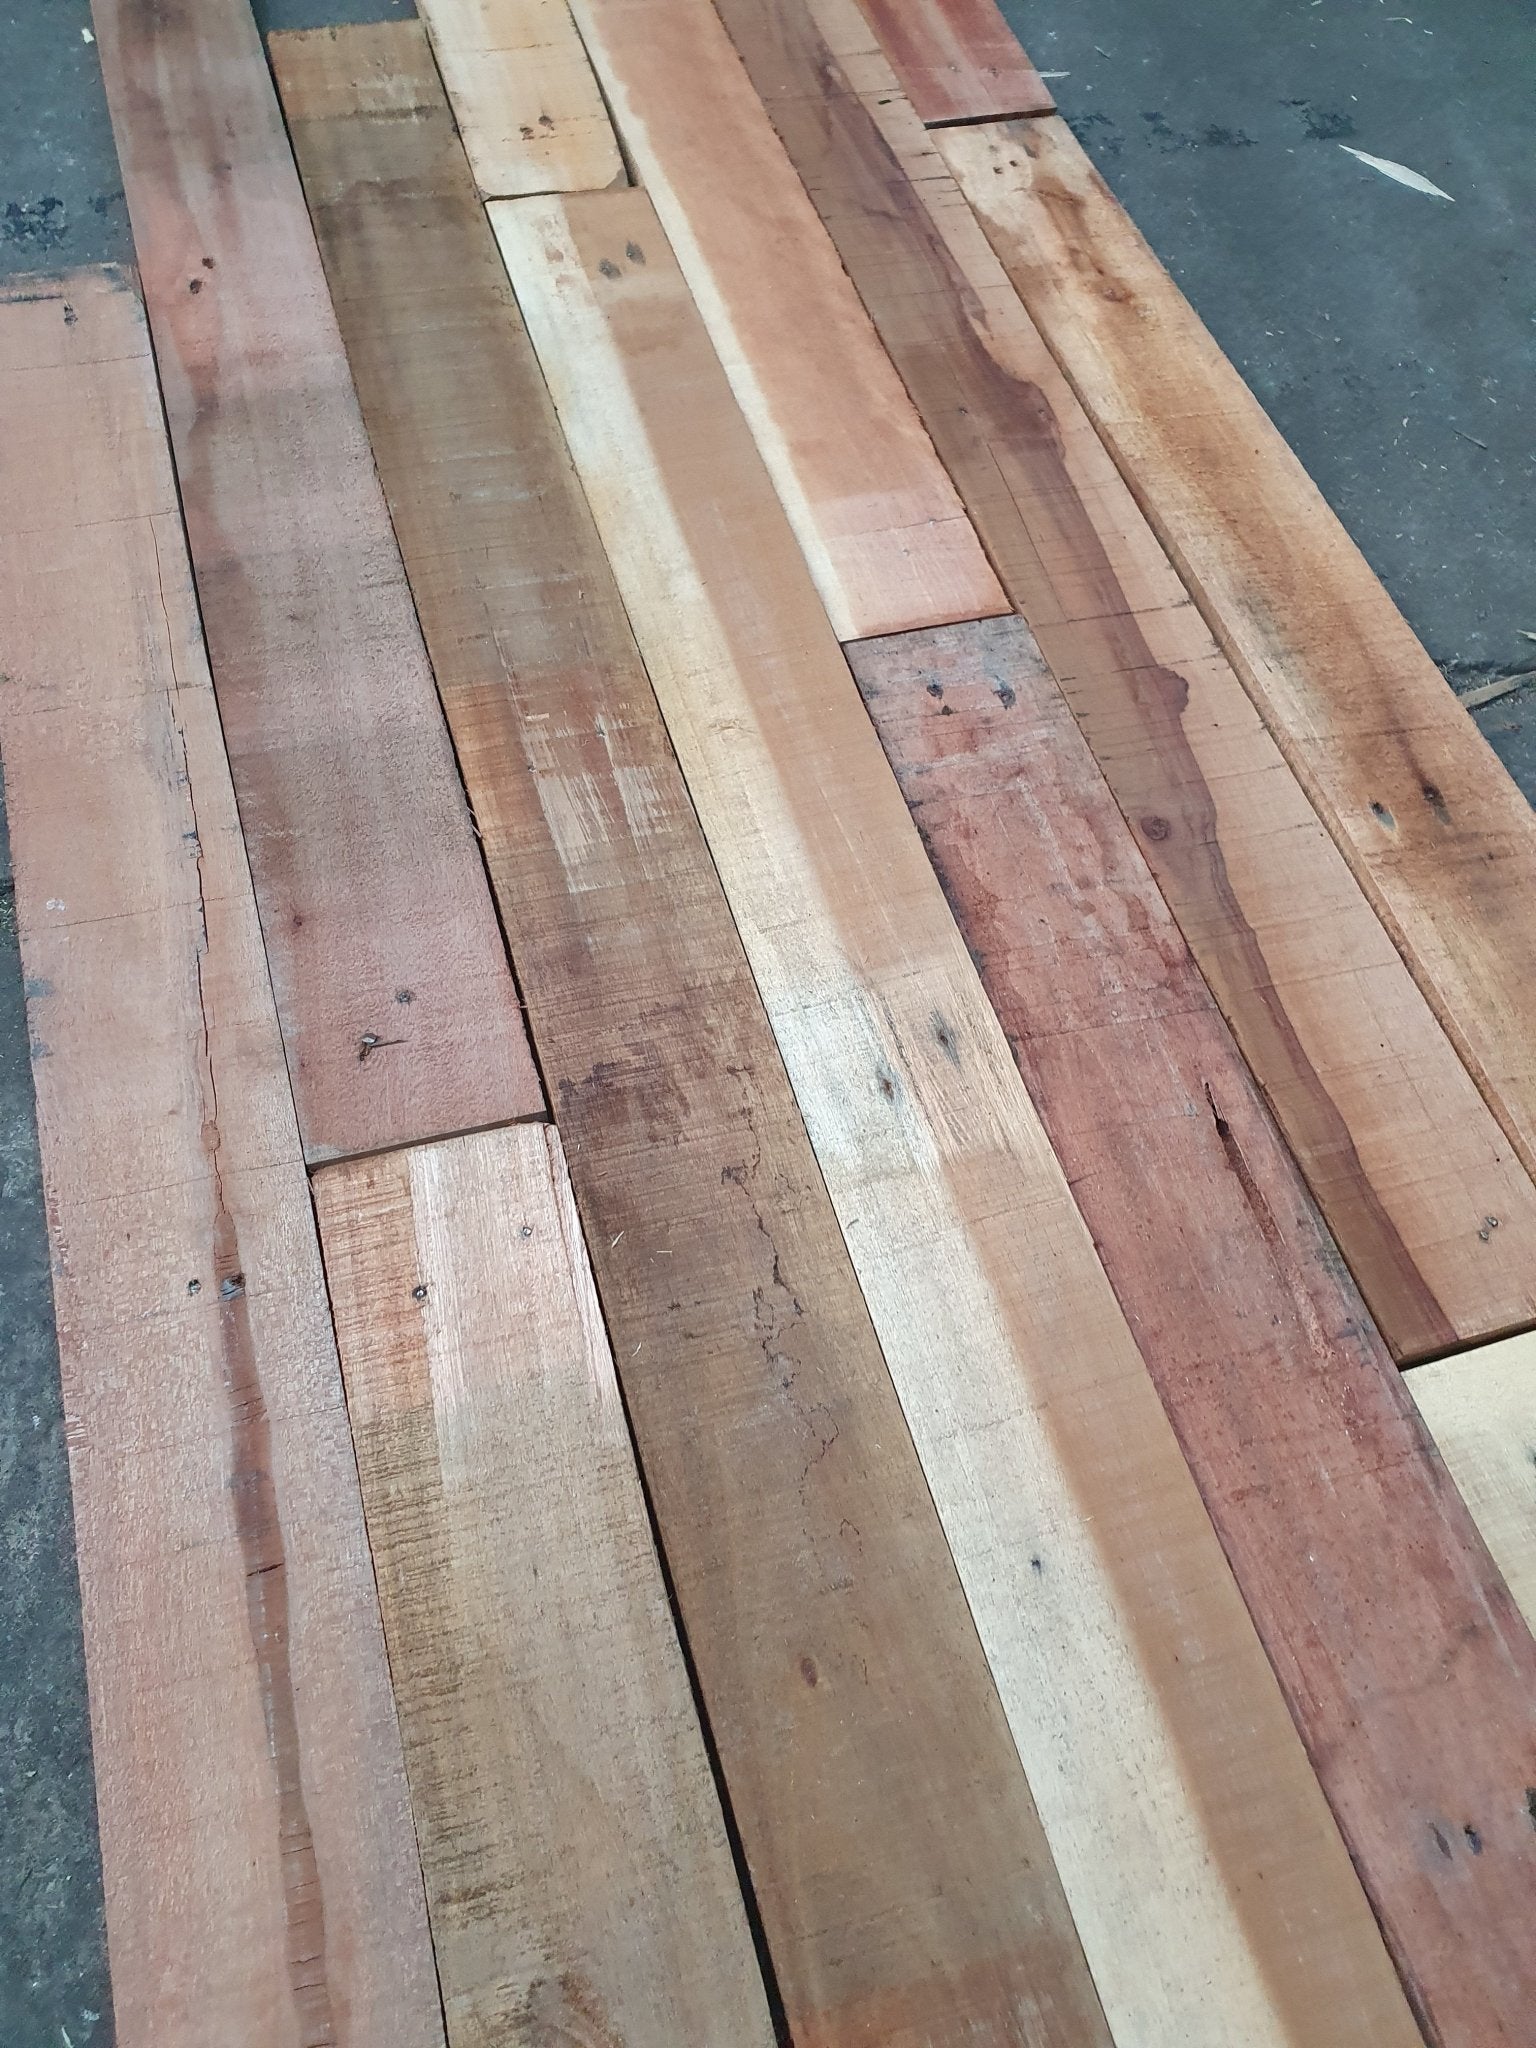 Duurzaam bouwen met aandacht voor detail: De recupwood planken, zorgvuldig ontnageld en voorbereid voor uw project